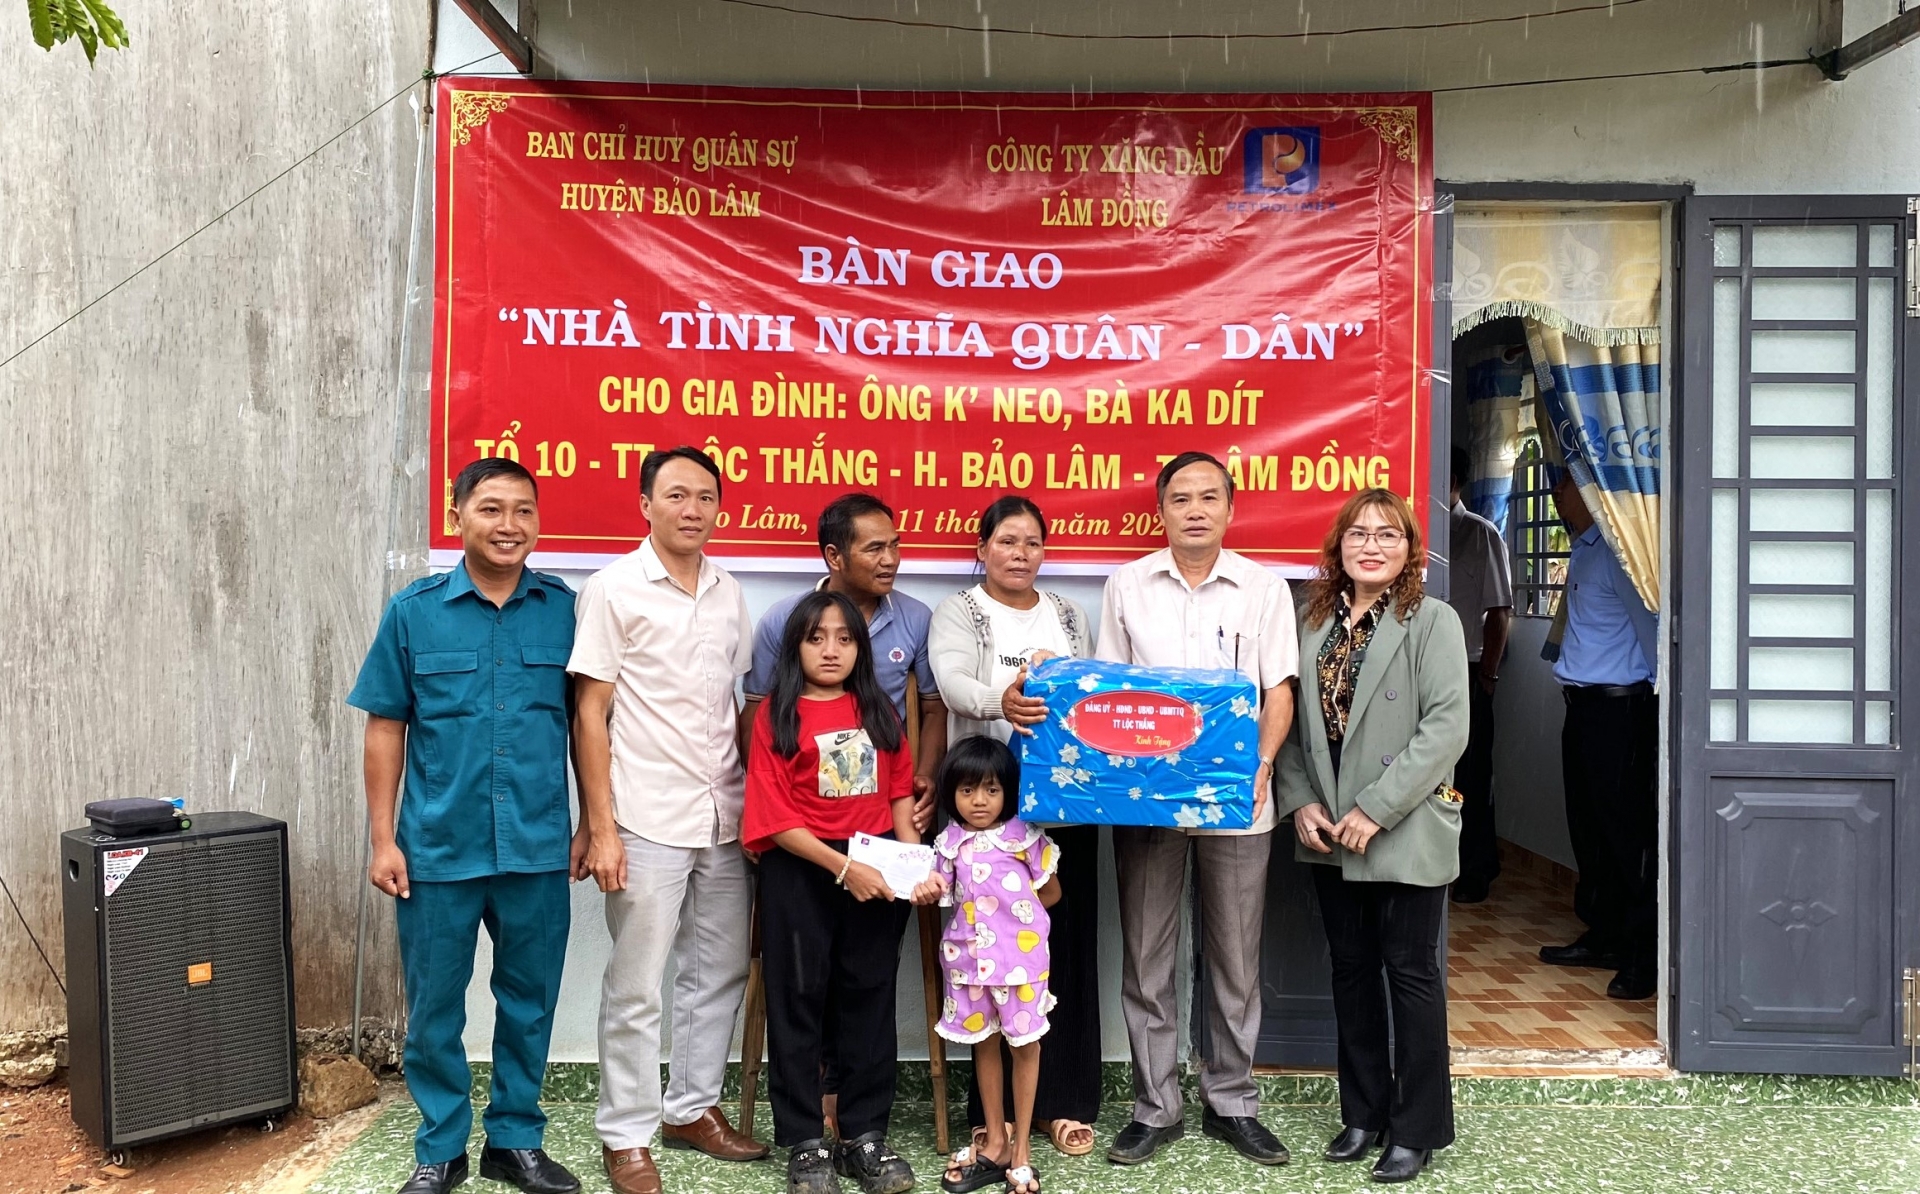 Ban Chỉ huy Quân sự huyện Bảo Lâm và UBND thị trấn Lộc Thắng trao tặng quà cho gia đình về nhà mới